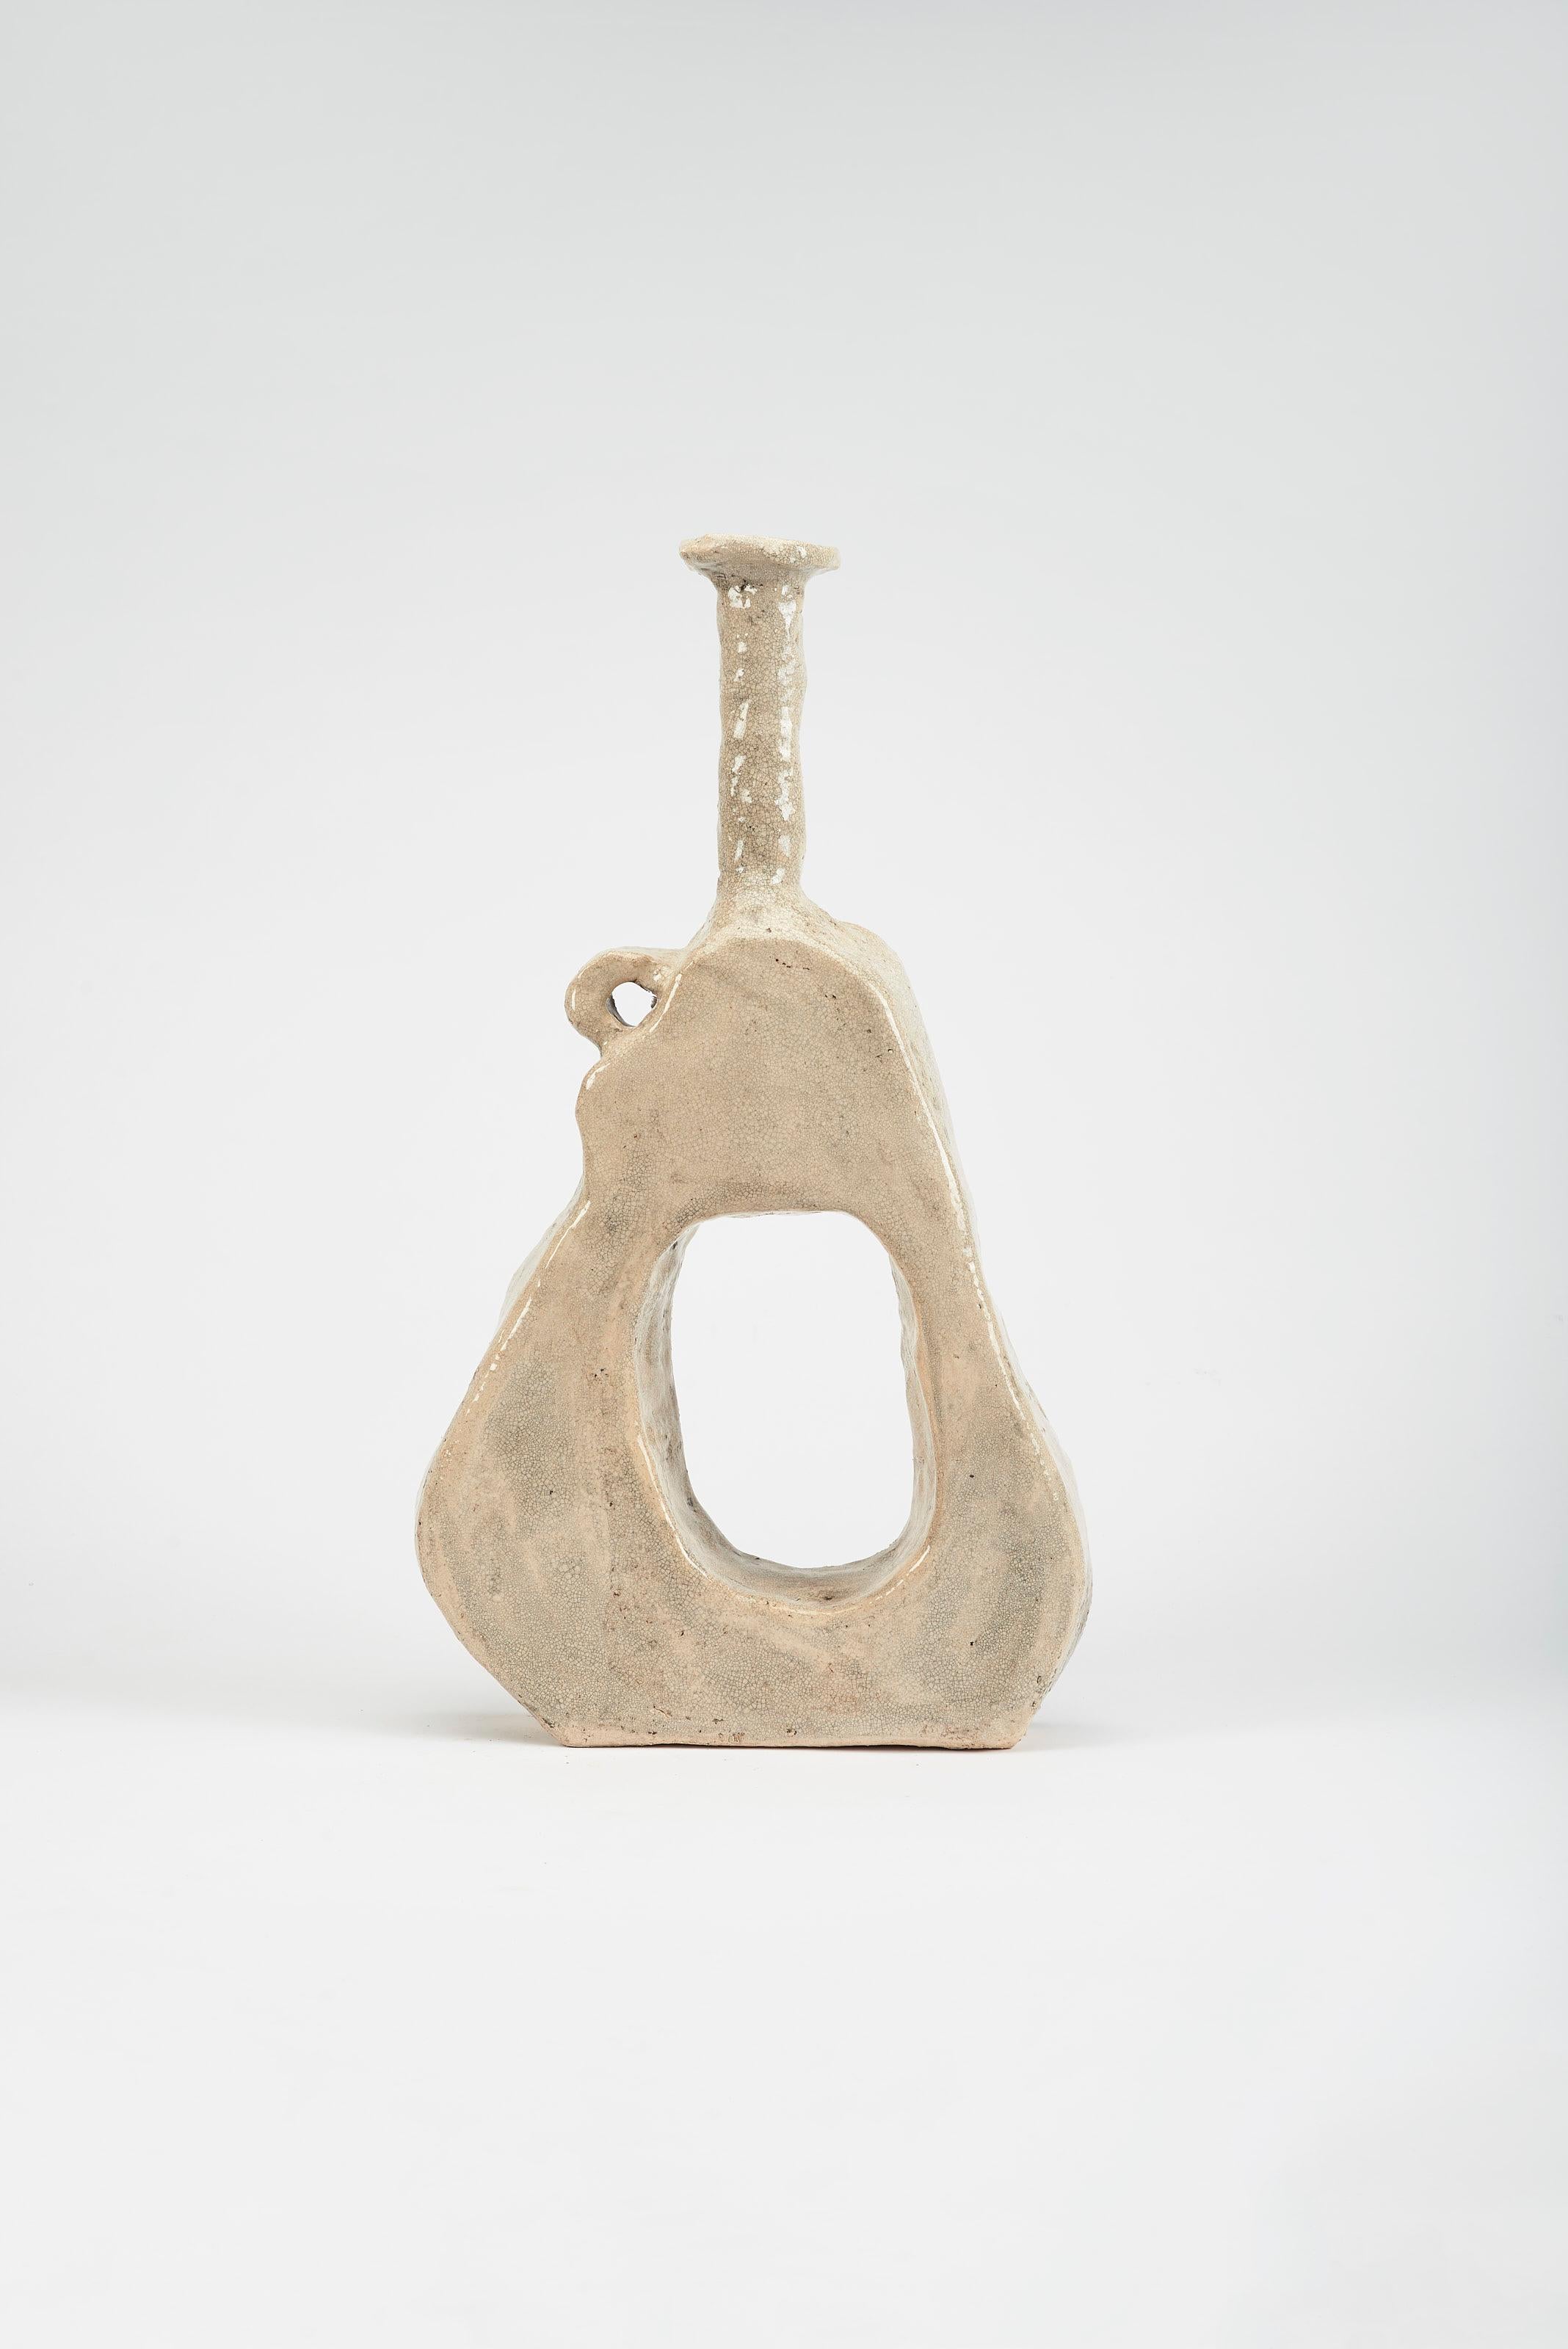 Große Umo-Vase von Willem Van Hooff
Abmessungen: B 50 x T 10 x H 62 cm (Die Abmessungen können variieren, da es sich um handgefertigte Stücke handelt, die leichte Größenabweichungen aufweisen können)
MATERIAL: Glasierte Keramik

Der Kern besteht aus